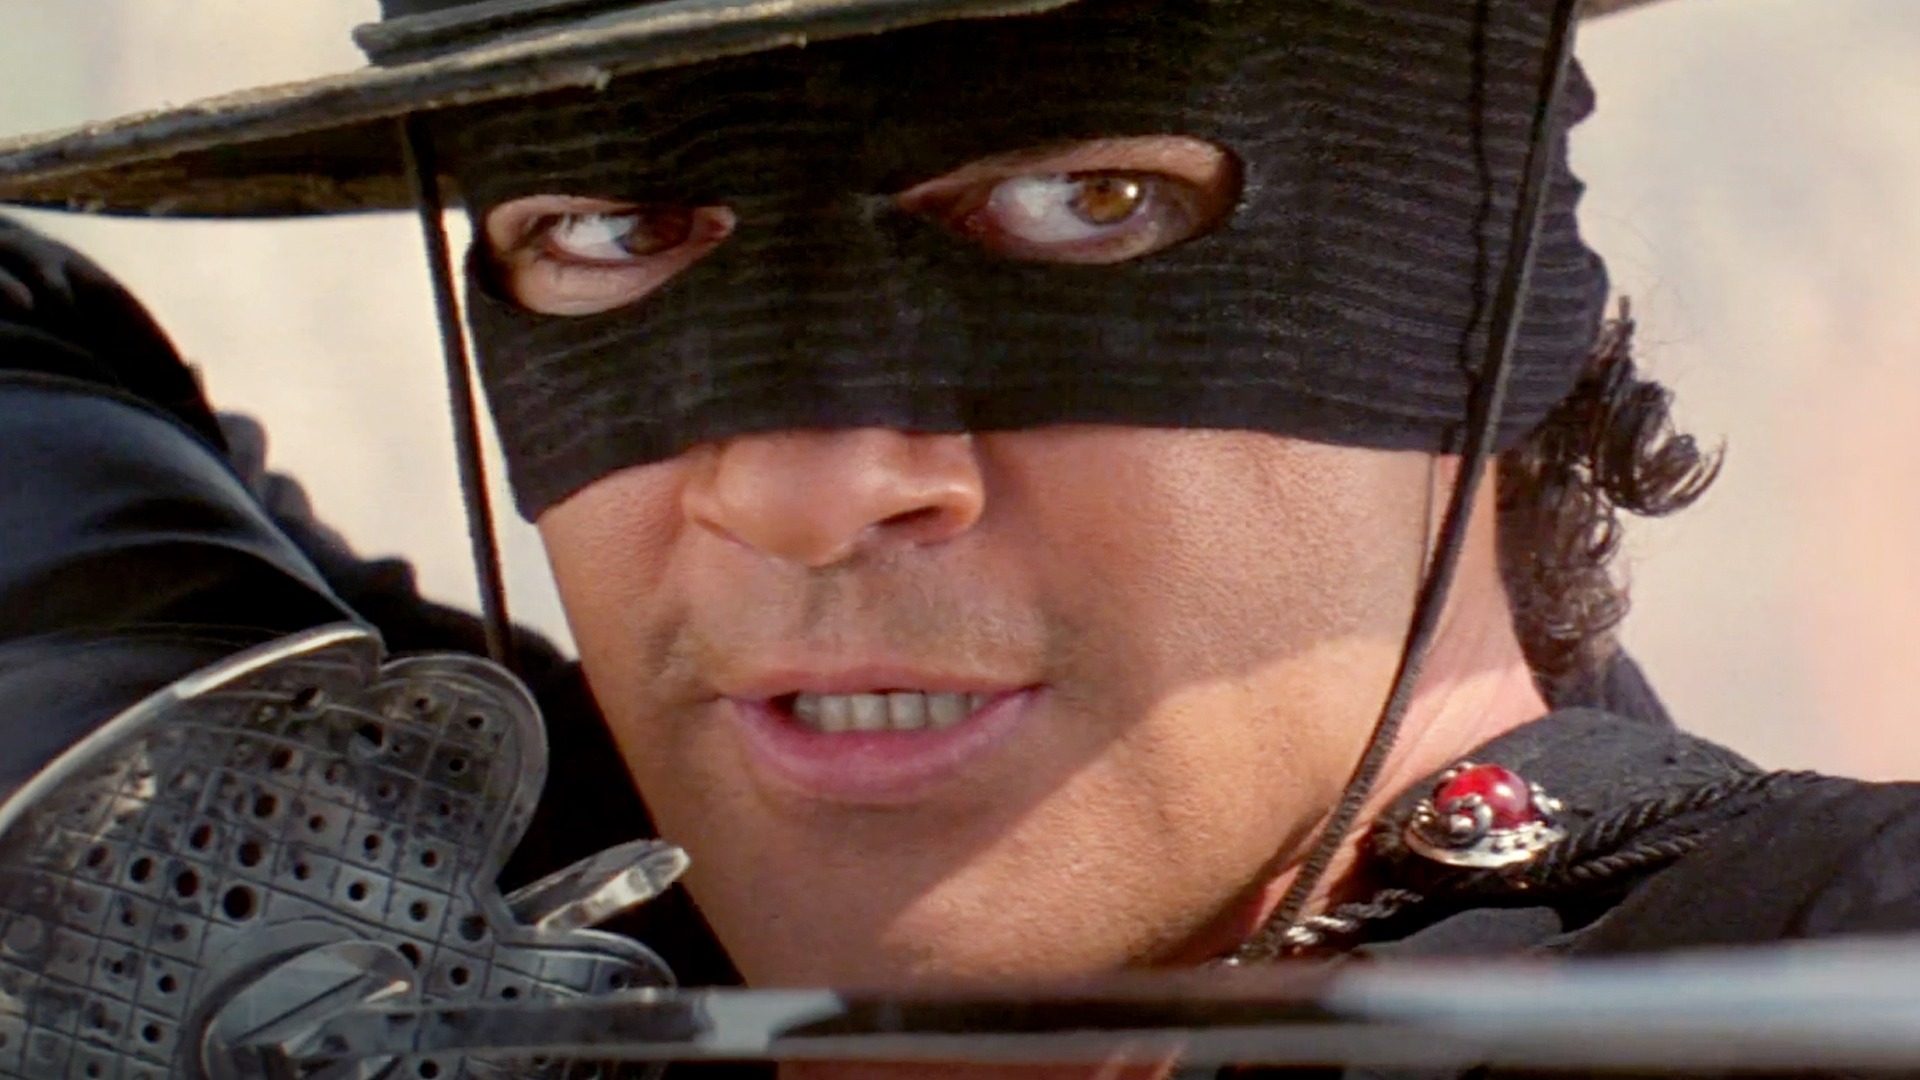 Zorro  Trailer (2024) 